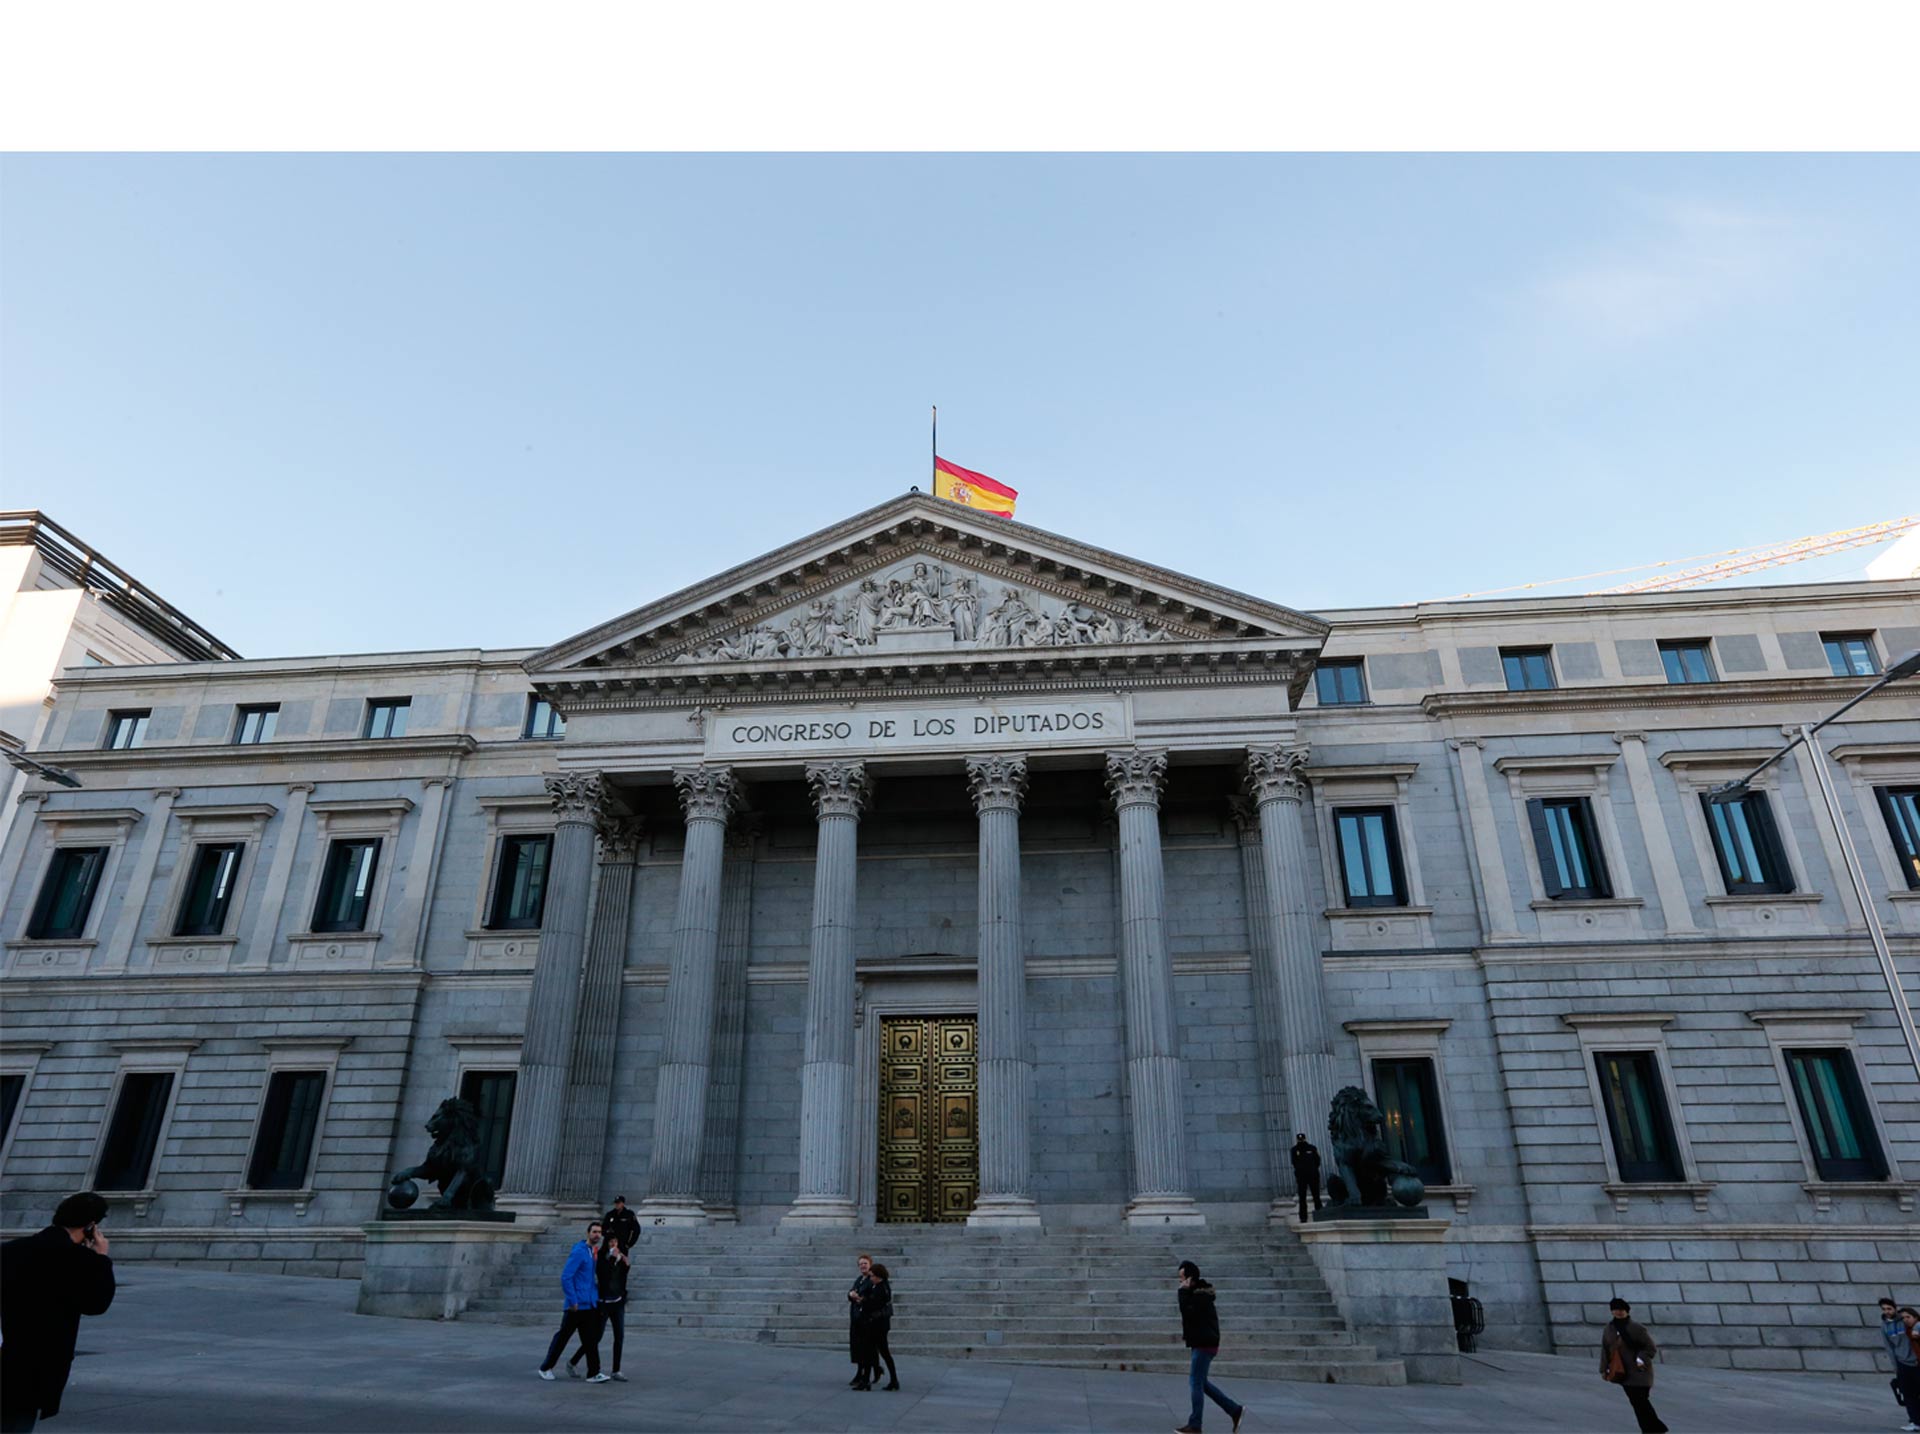 Por primera vez, las mujeres alcanzan el mínimo de 40% de parlamentarias que establece la ley española